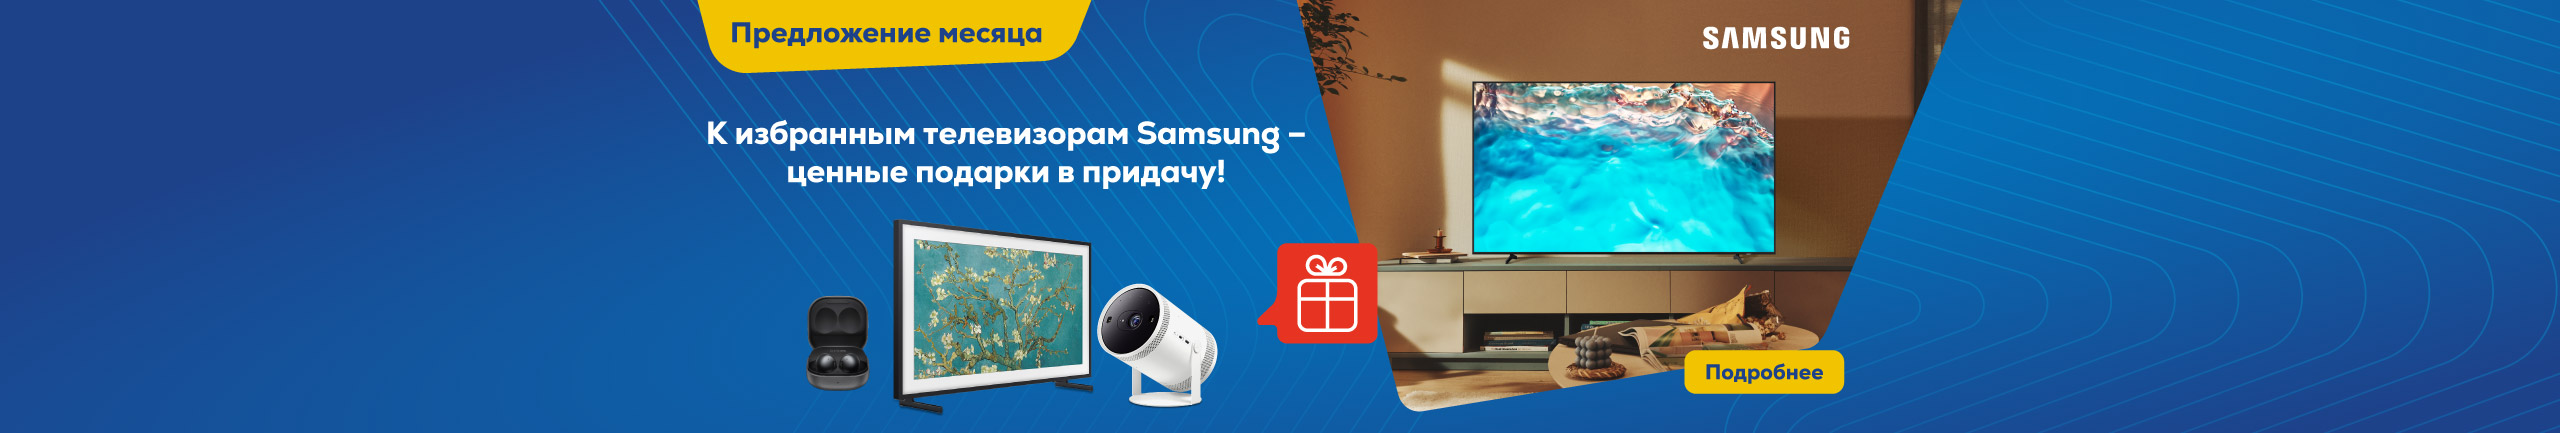 К избранным телевизорам Samsung – ценные подарки в придачу!